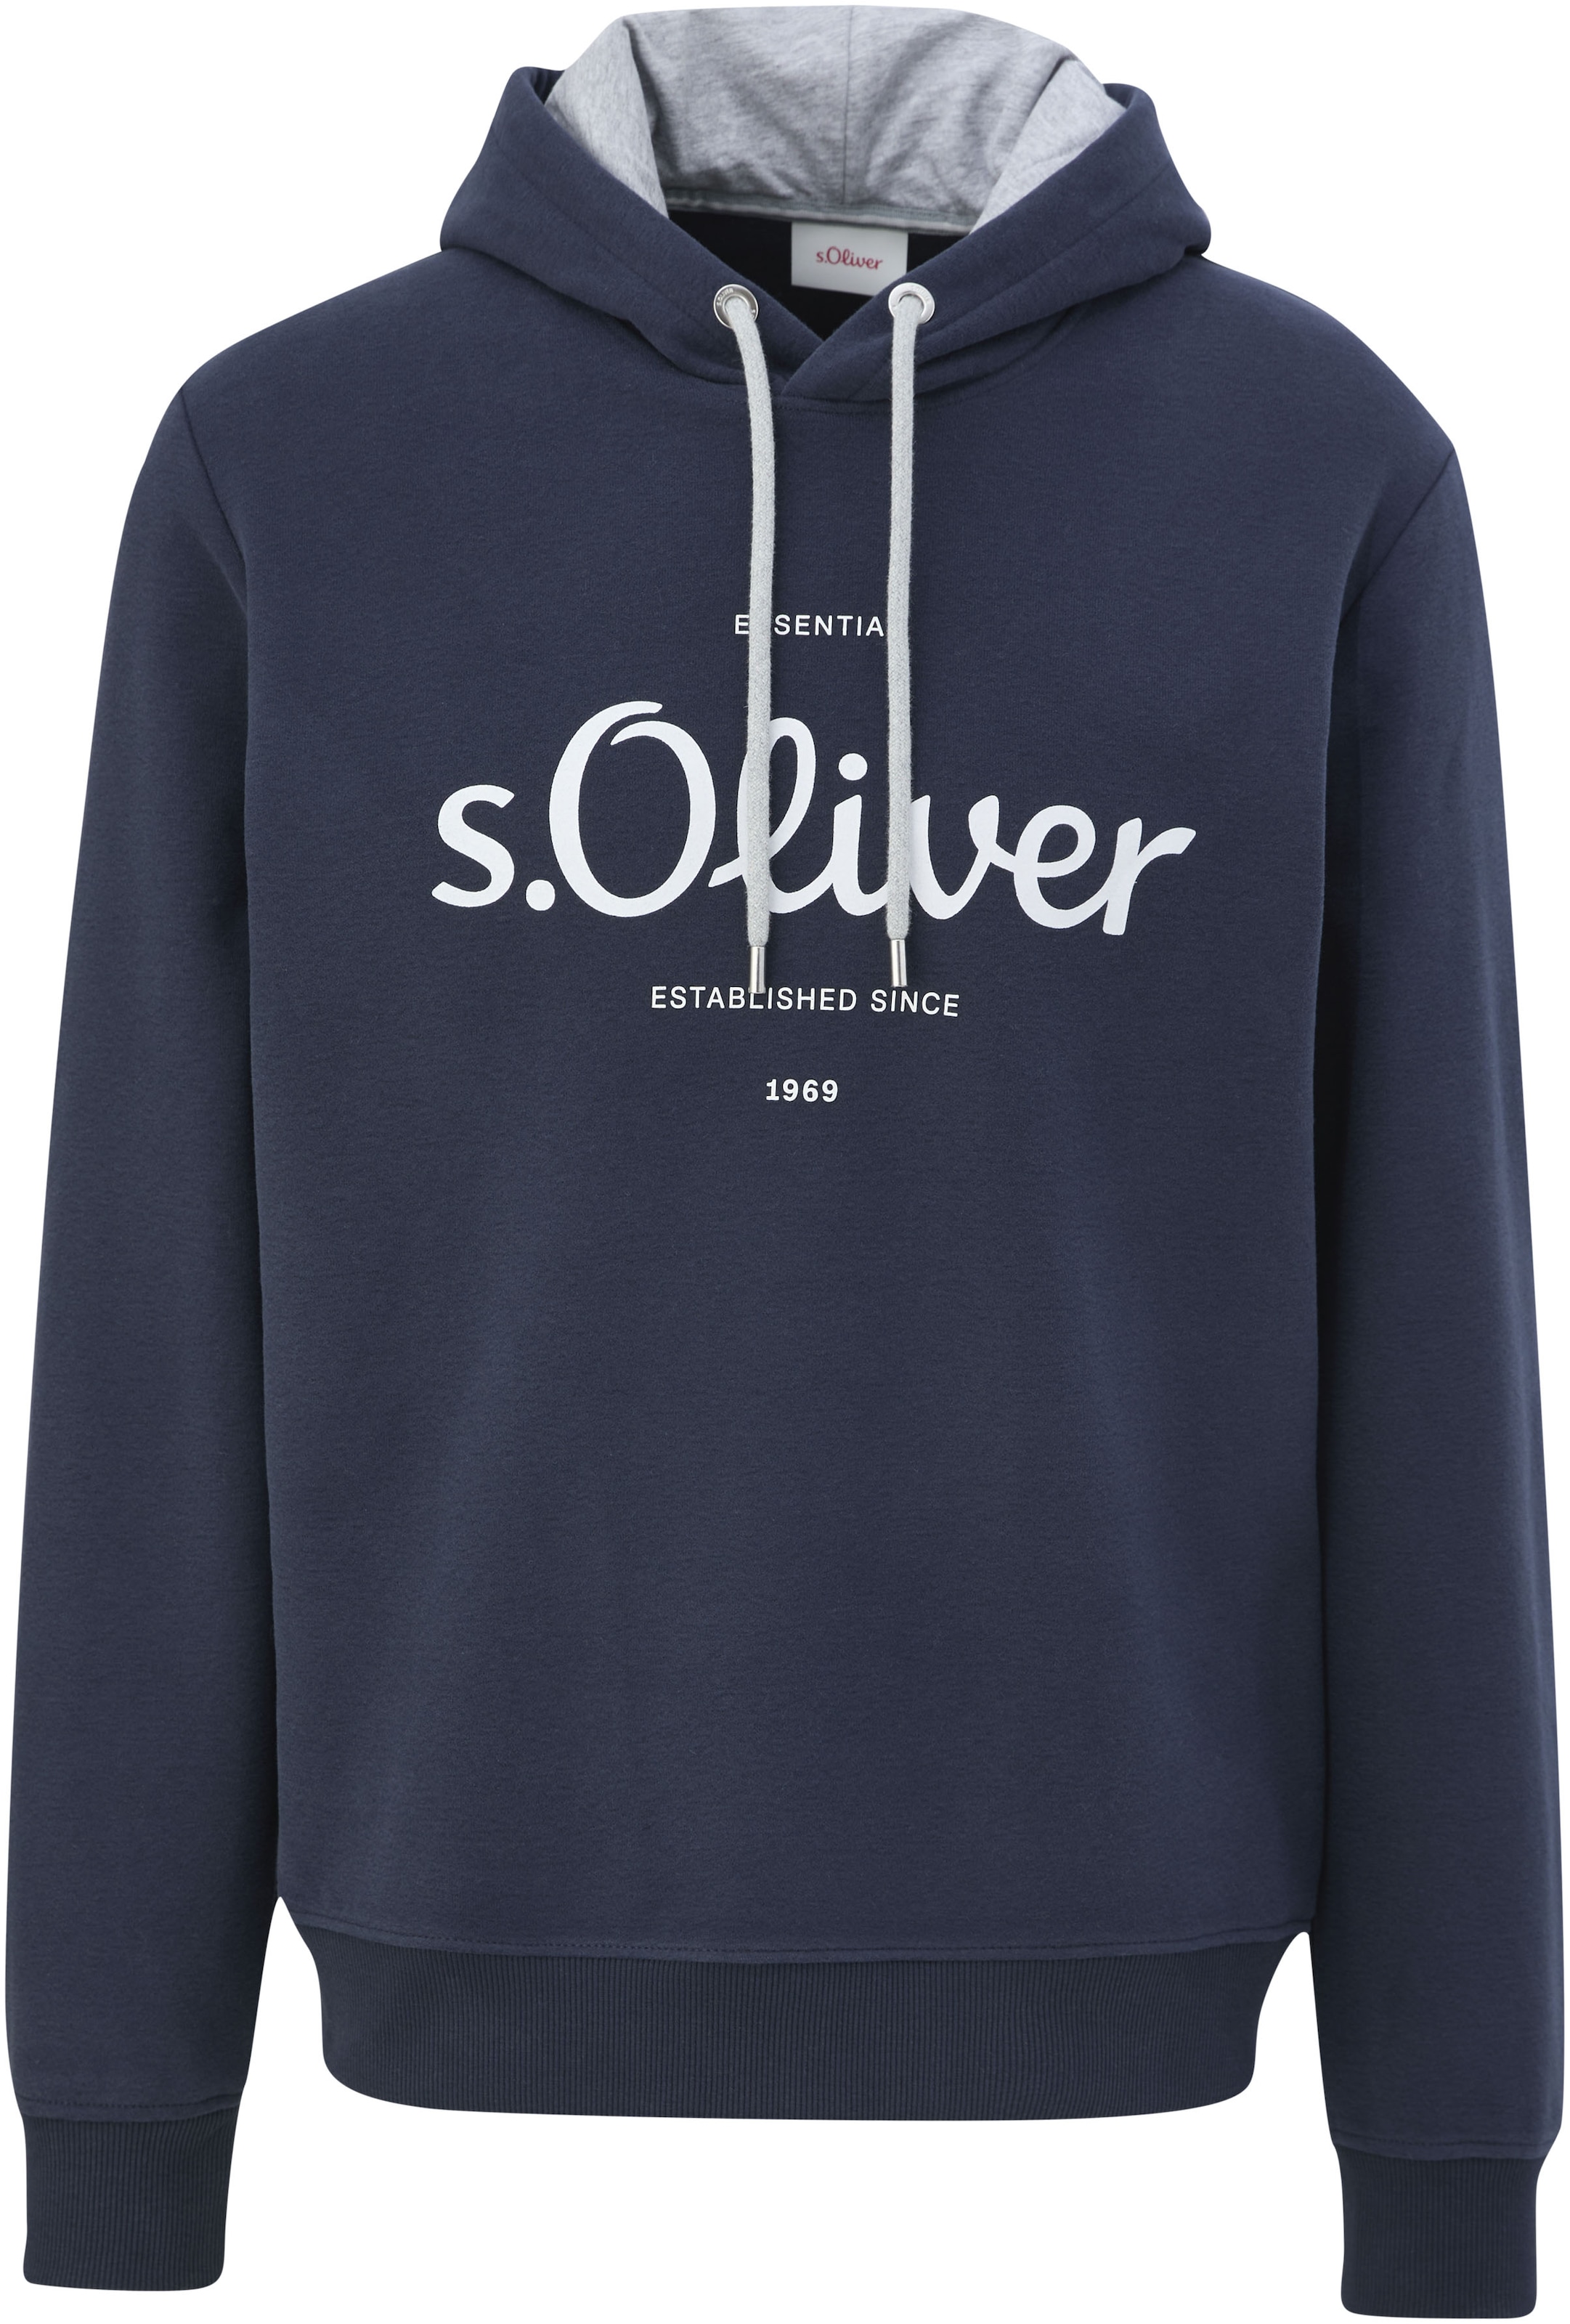 s.Oliver Kapuzensweatshirt, mit gummiertem Print im OTTO Online Shop